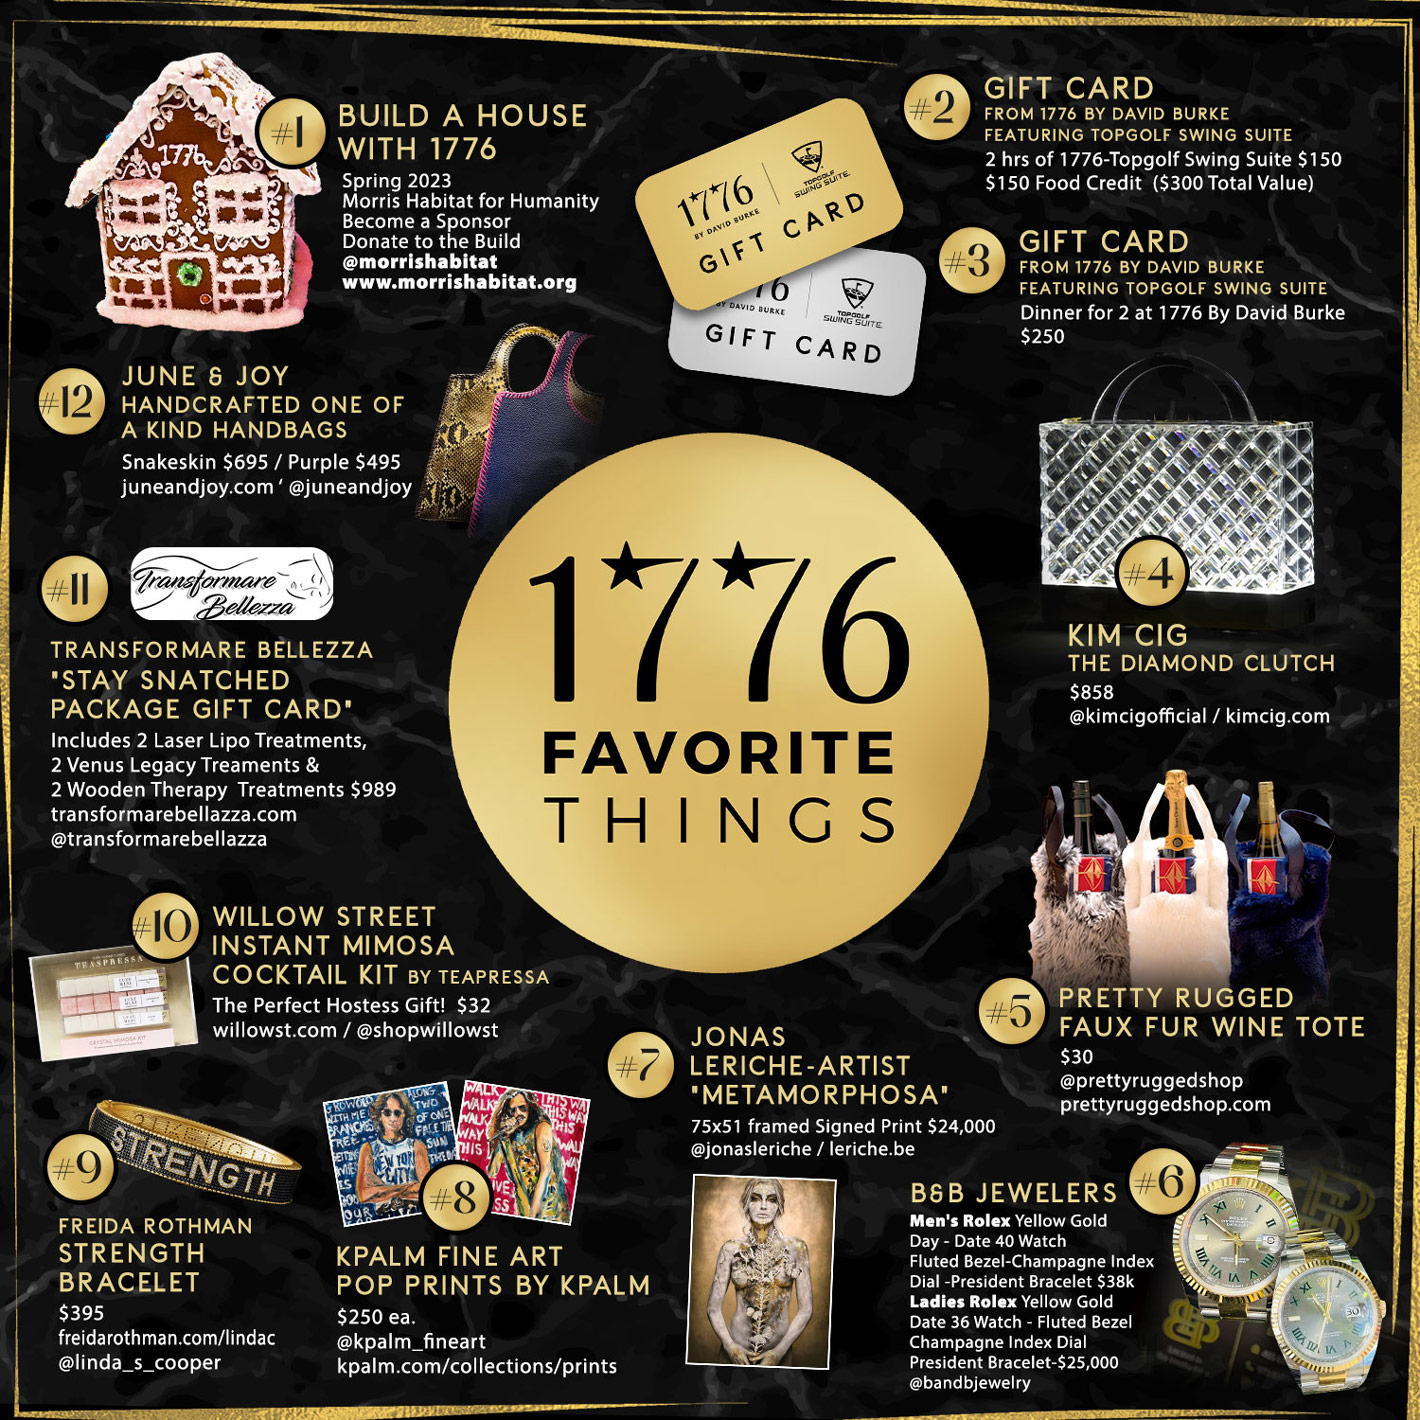 1776 Favorite Things